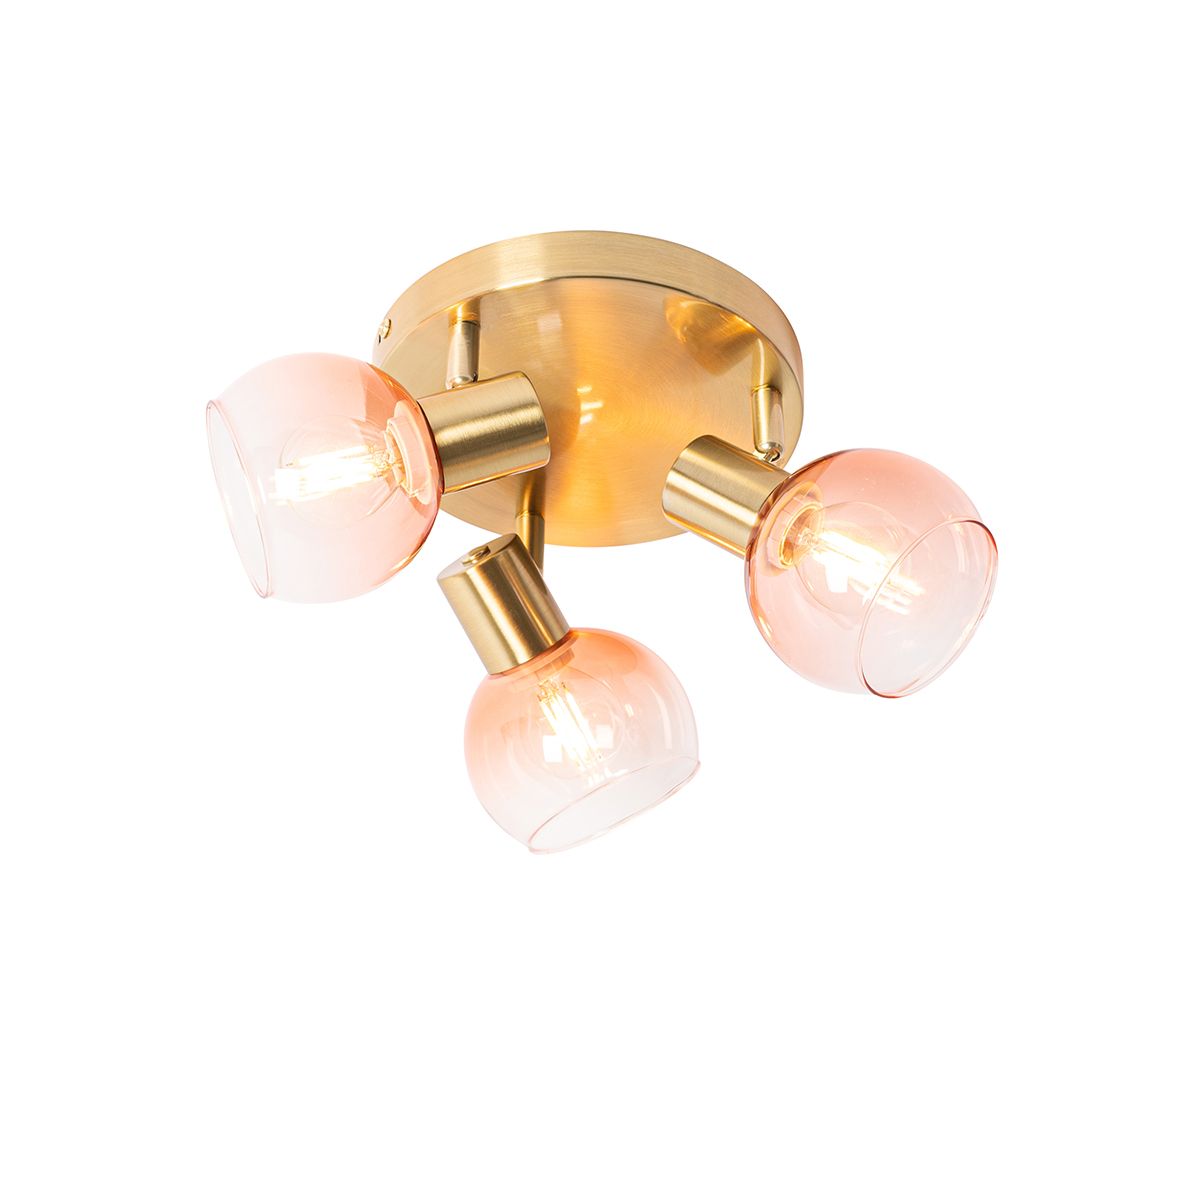 Art Deco stropné svietidlo zlaté s ružovým sklom 3 svetlá - Vidro